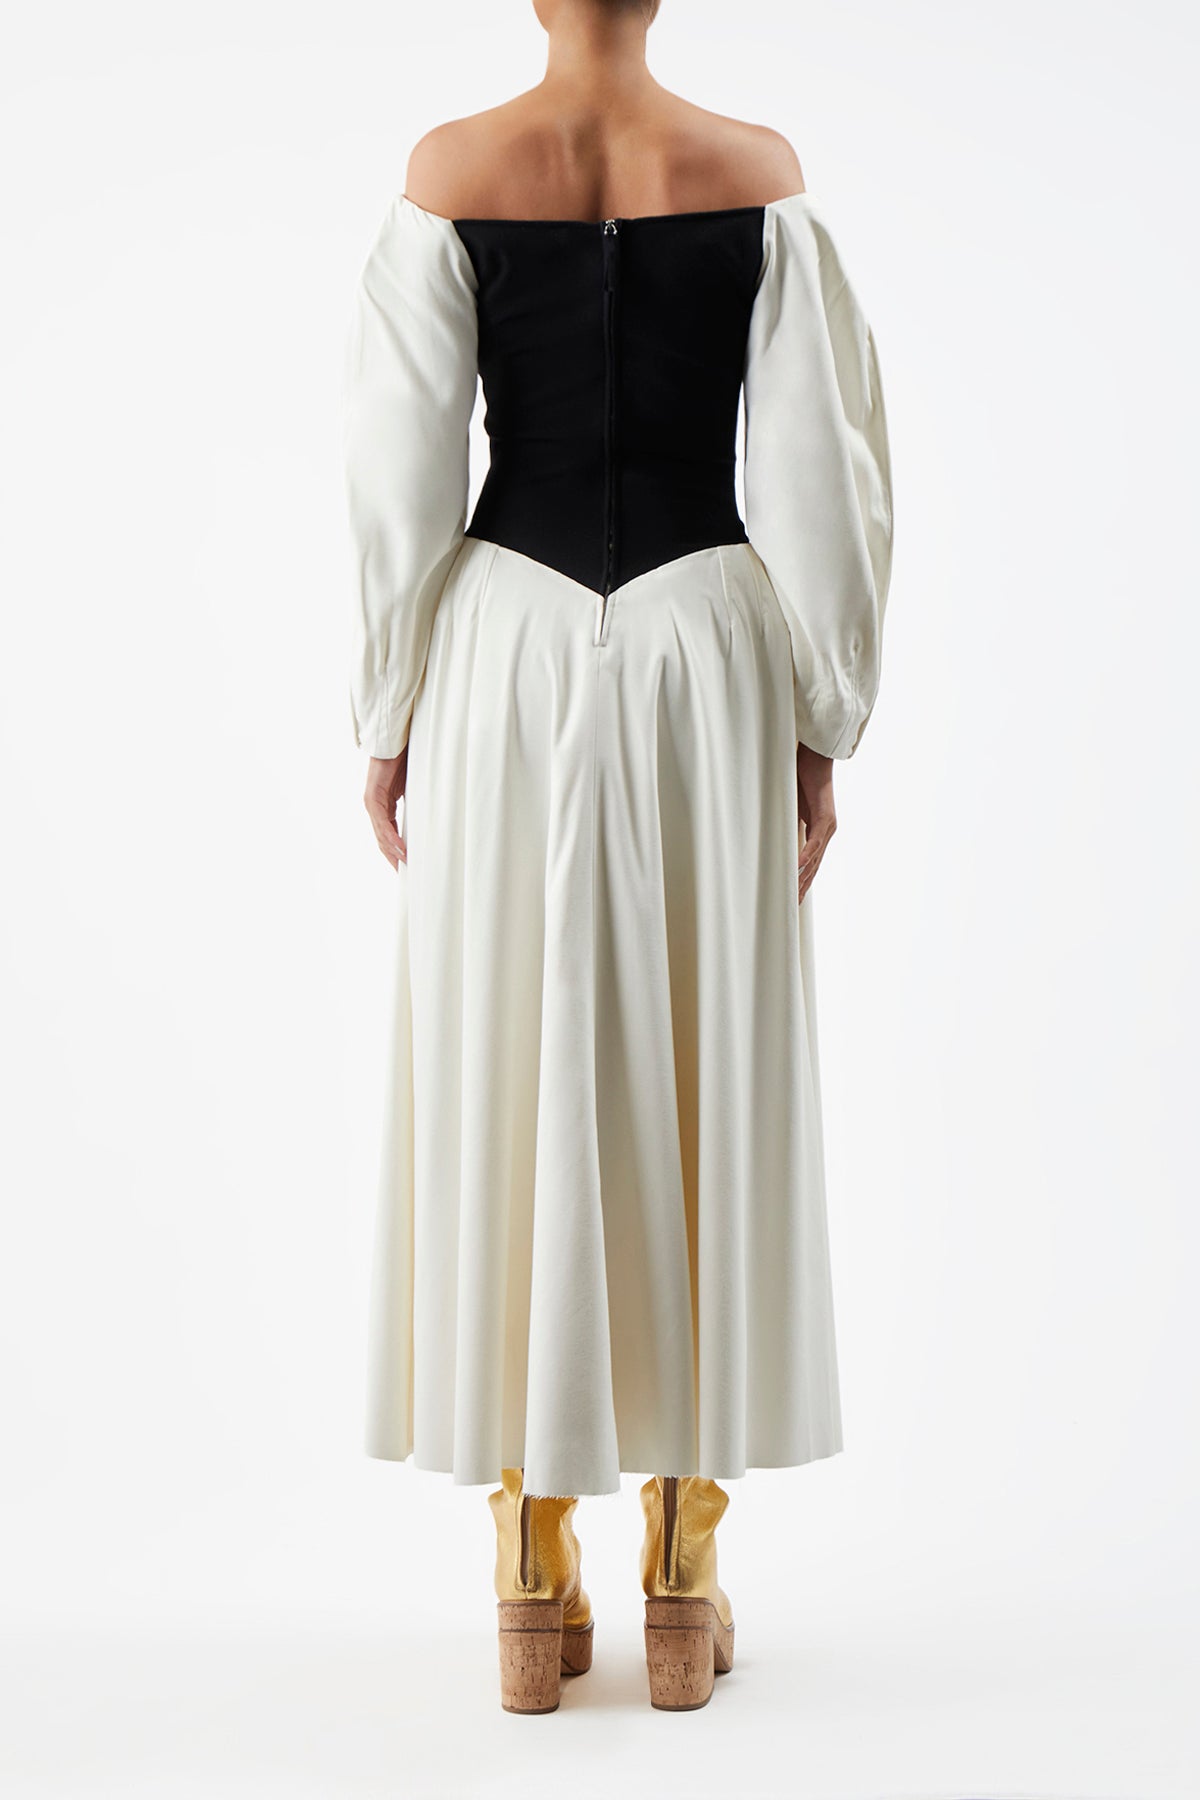 Lani Dress in Silk